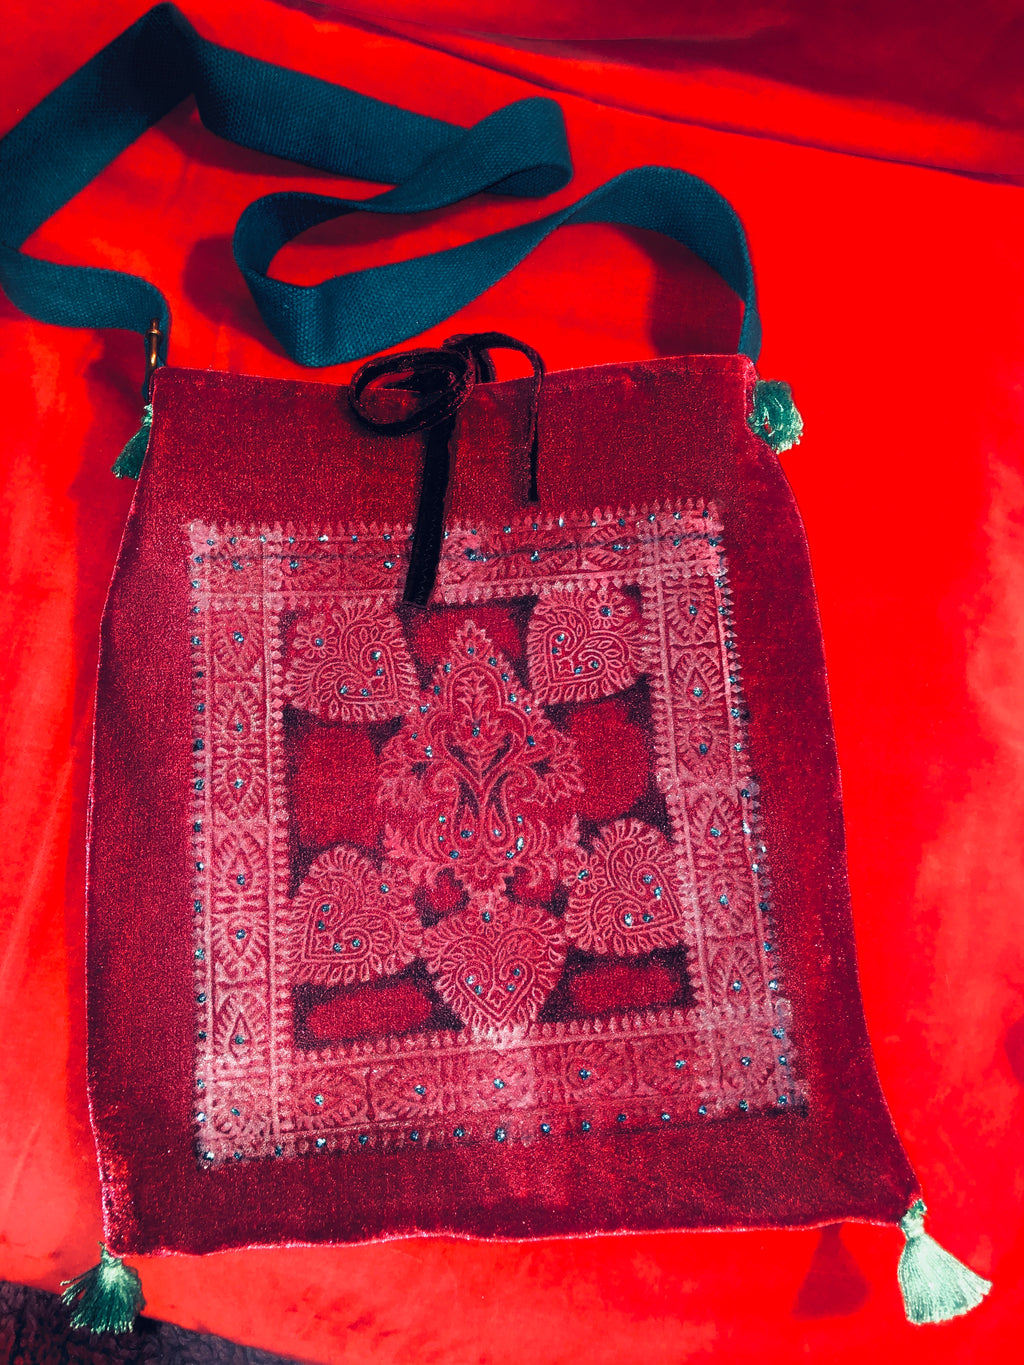 Velvet Handbag w/ Turquoise Strap